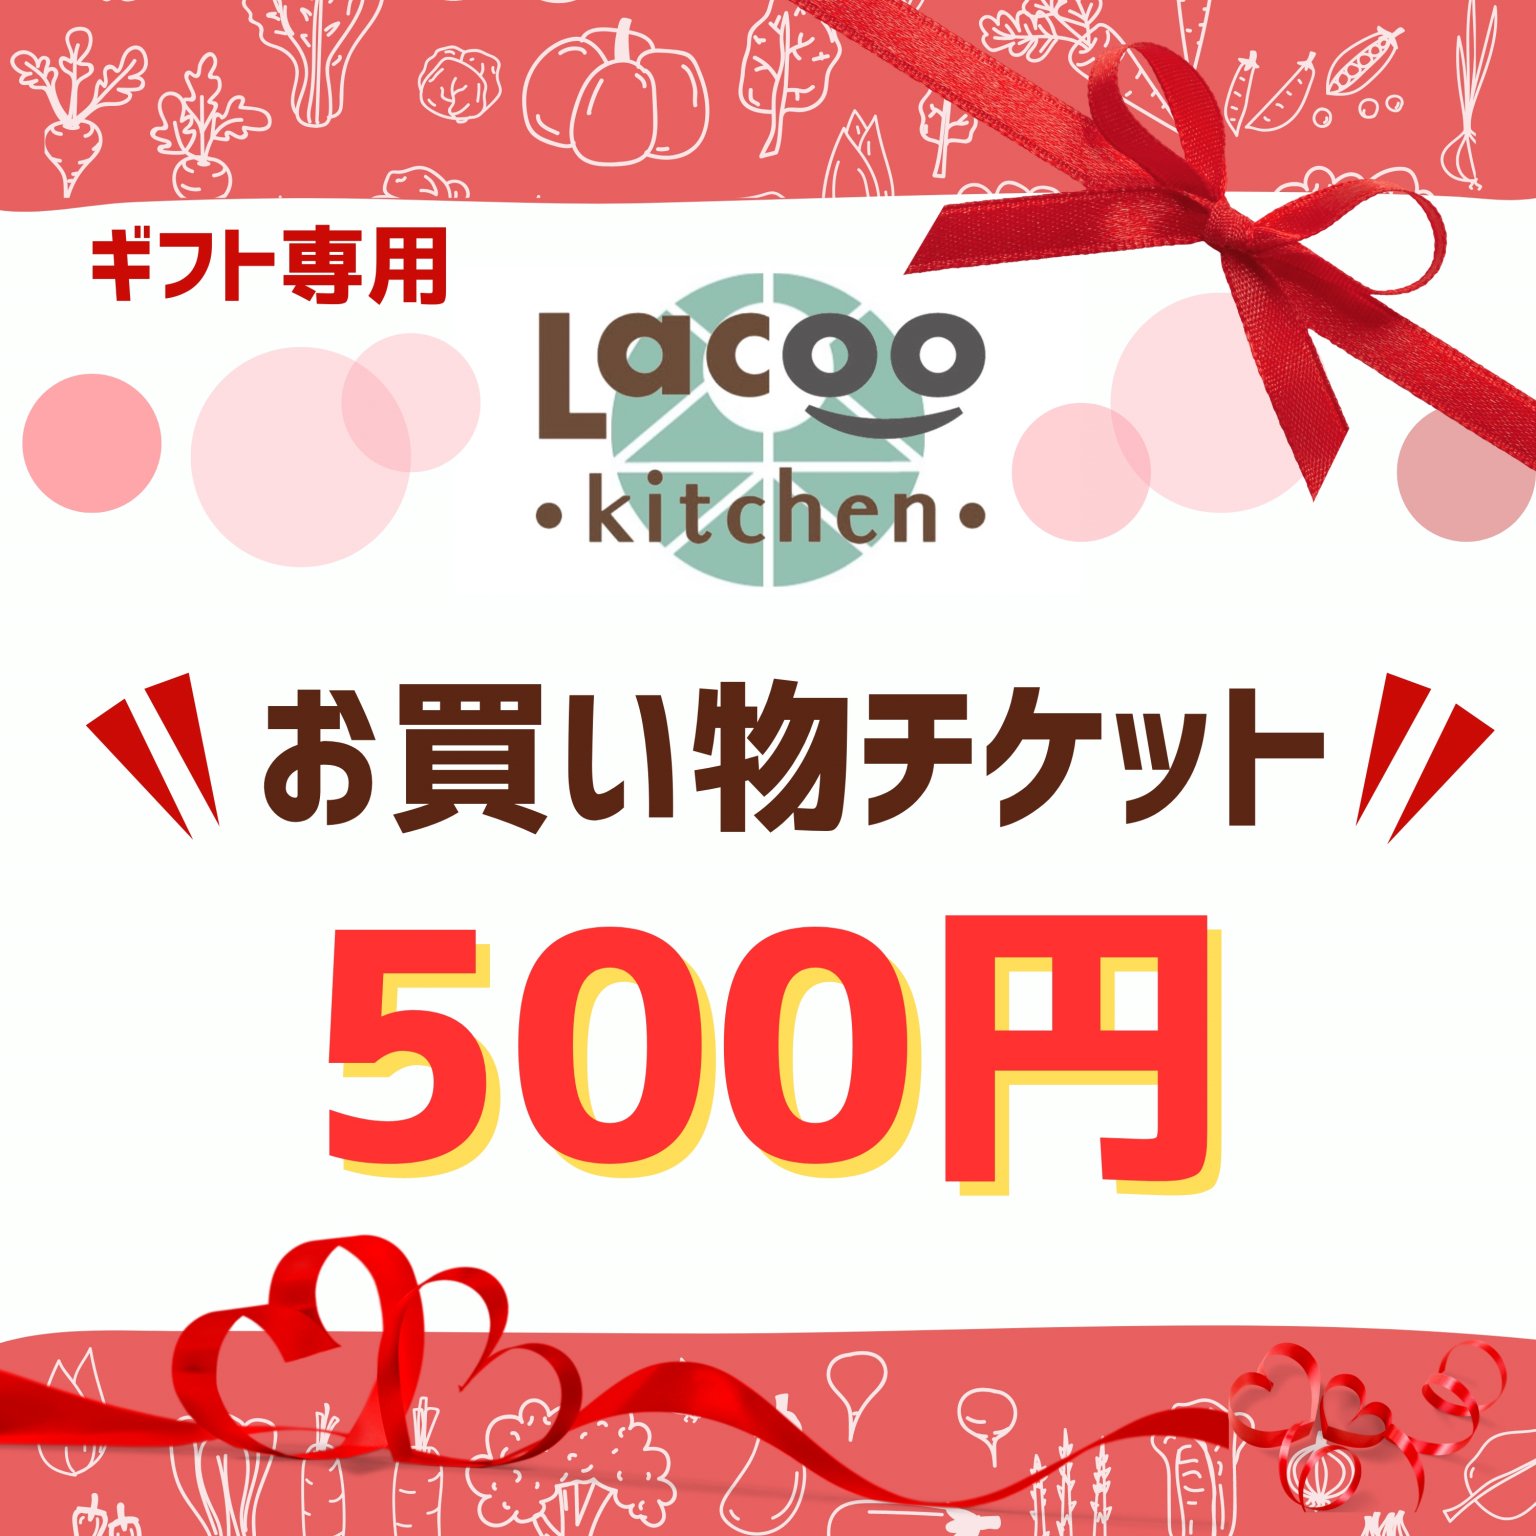 【ギフト専用】500円お買い物チケット(Lacoo kitchen...)